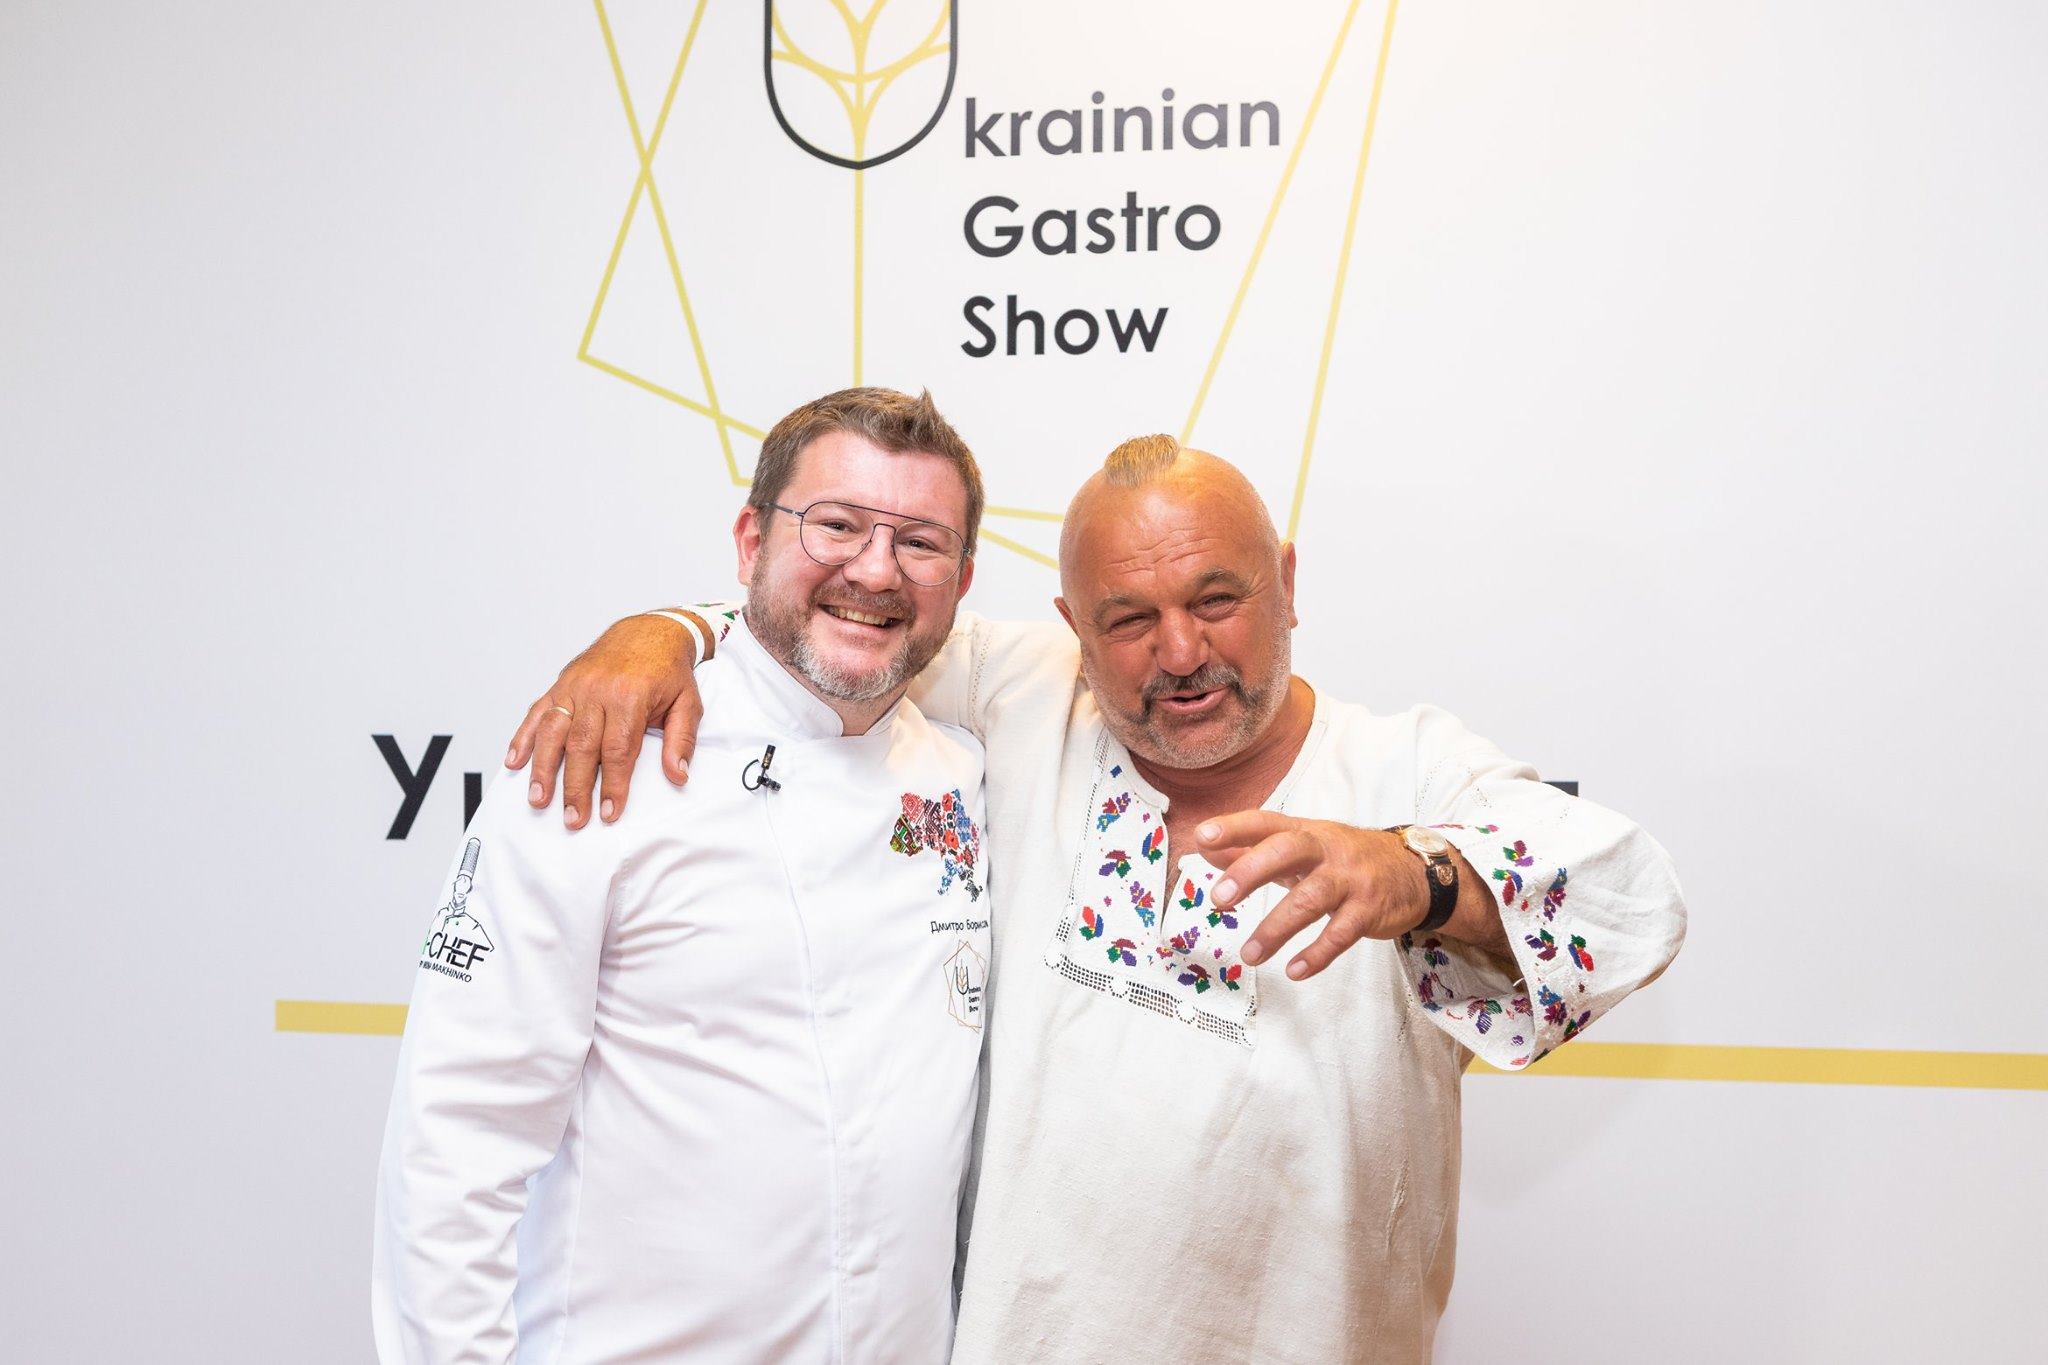 Українська кухня майбутнього: Дмитро Борисов на Ukrainian Gastro Show 2019 (ВІДЕО)